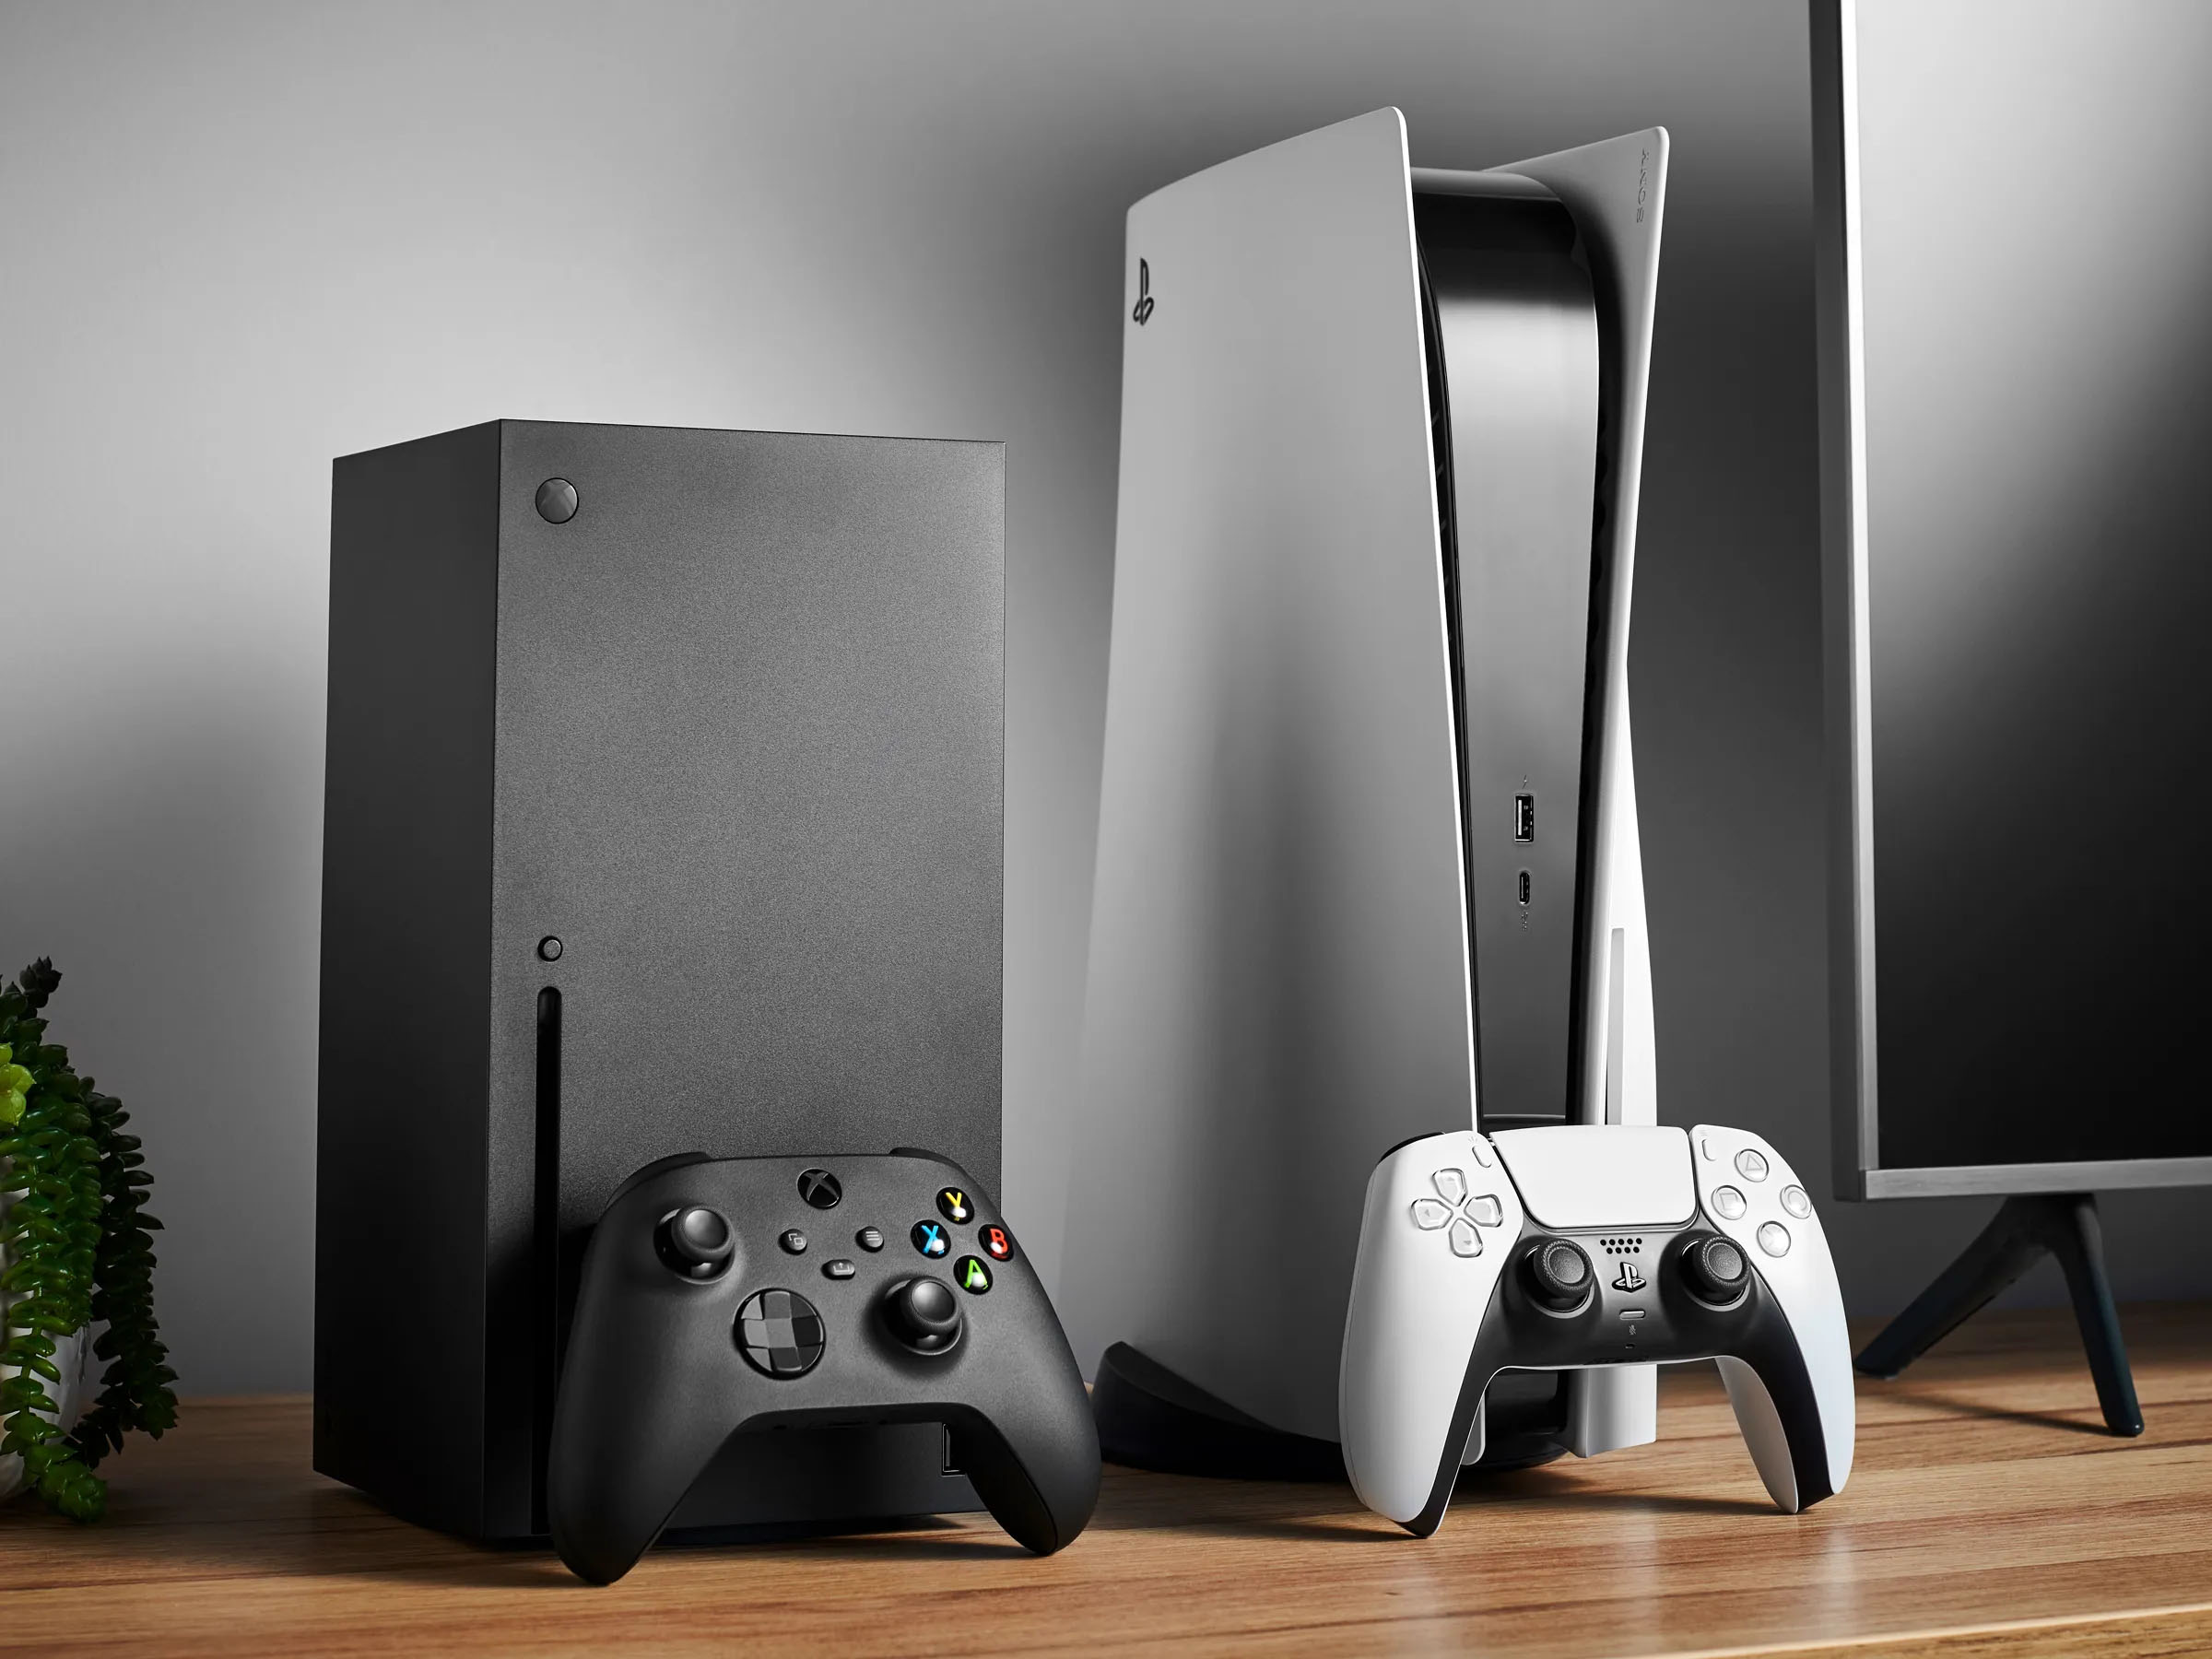 Cựu giám đốc Xbox: "Cuộc chiến" giữa fan Xbox và PS được chính các quản lý ở Microsoft khuyến khích